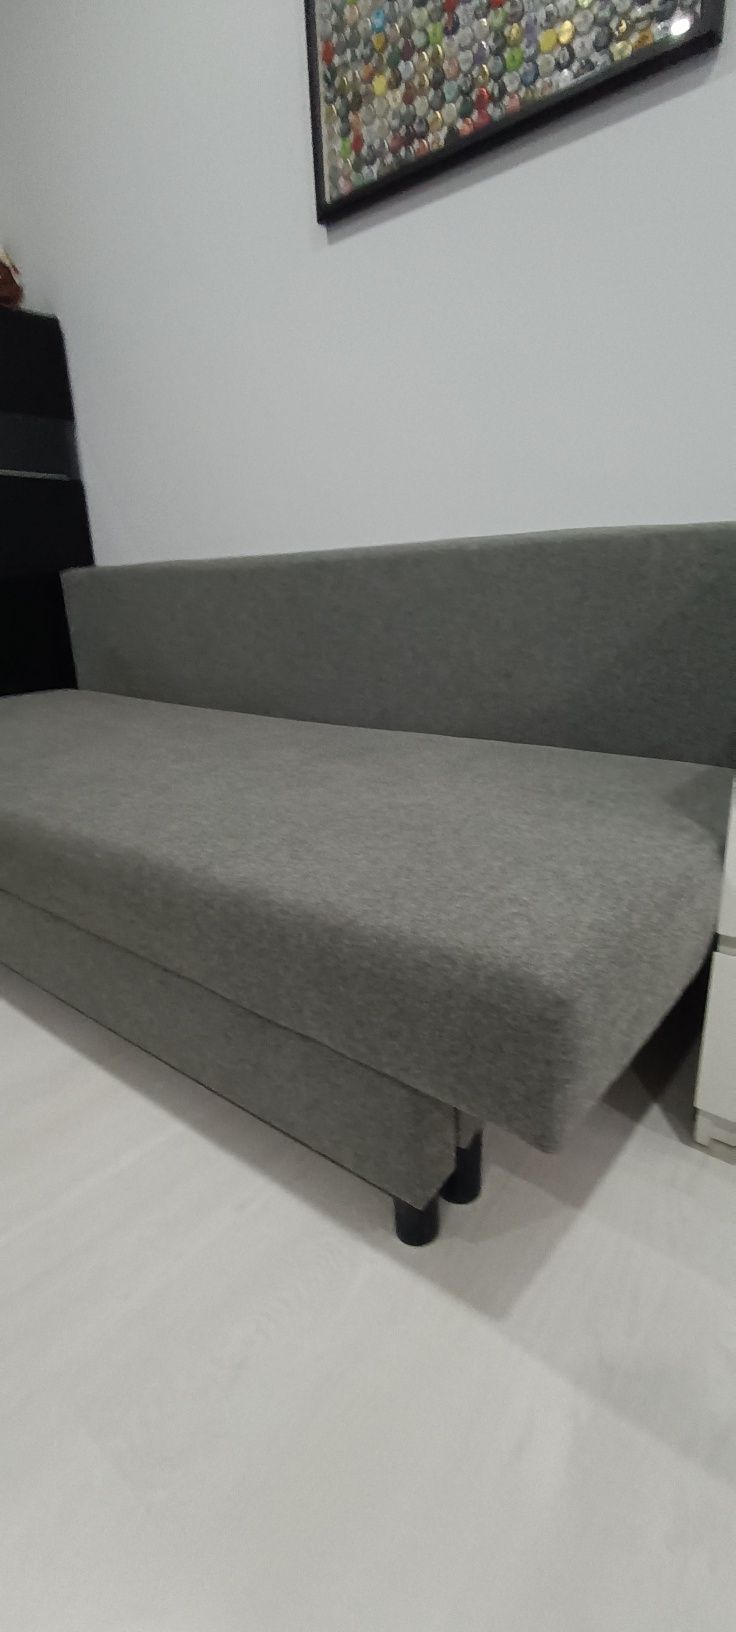 Sofá cama IKEA impecável